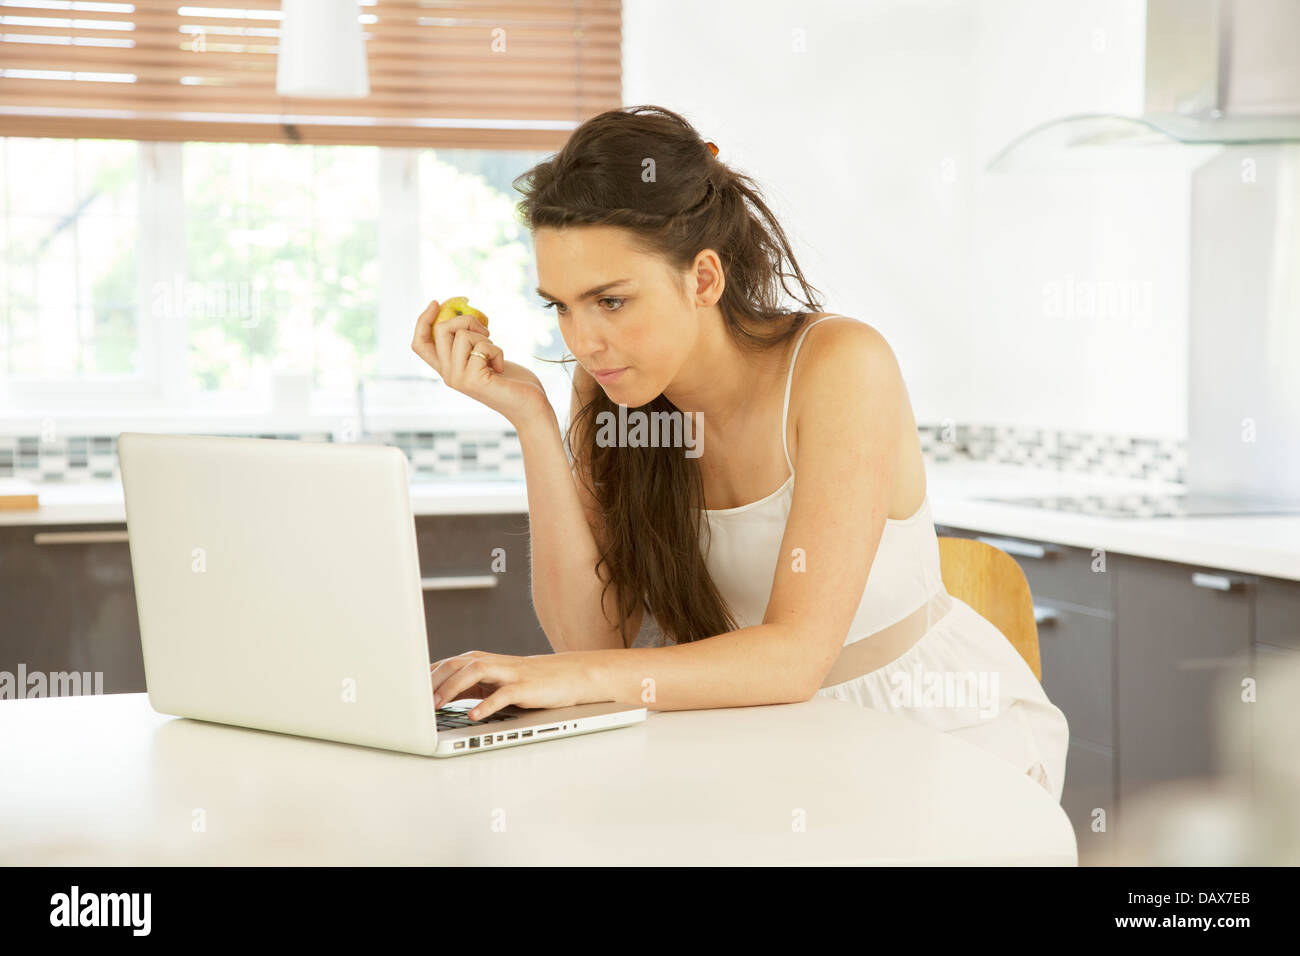 Giovane donna in una cucina utilizzando un computer portatile, tenendo un apple. Foto Stock